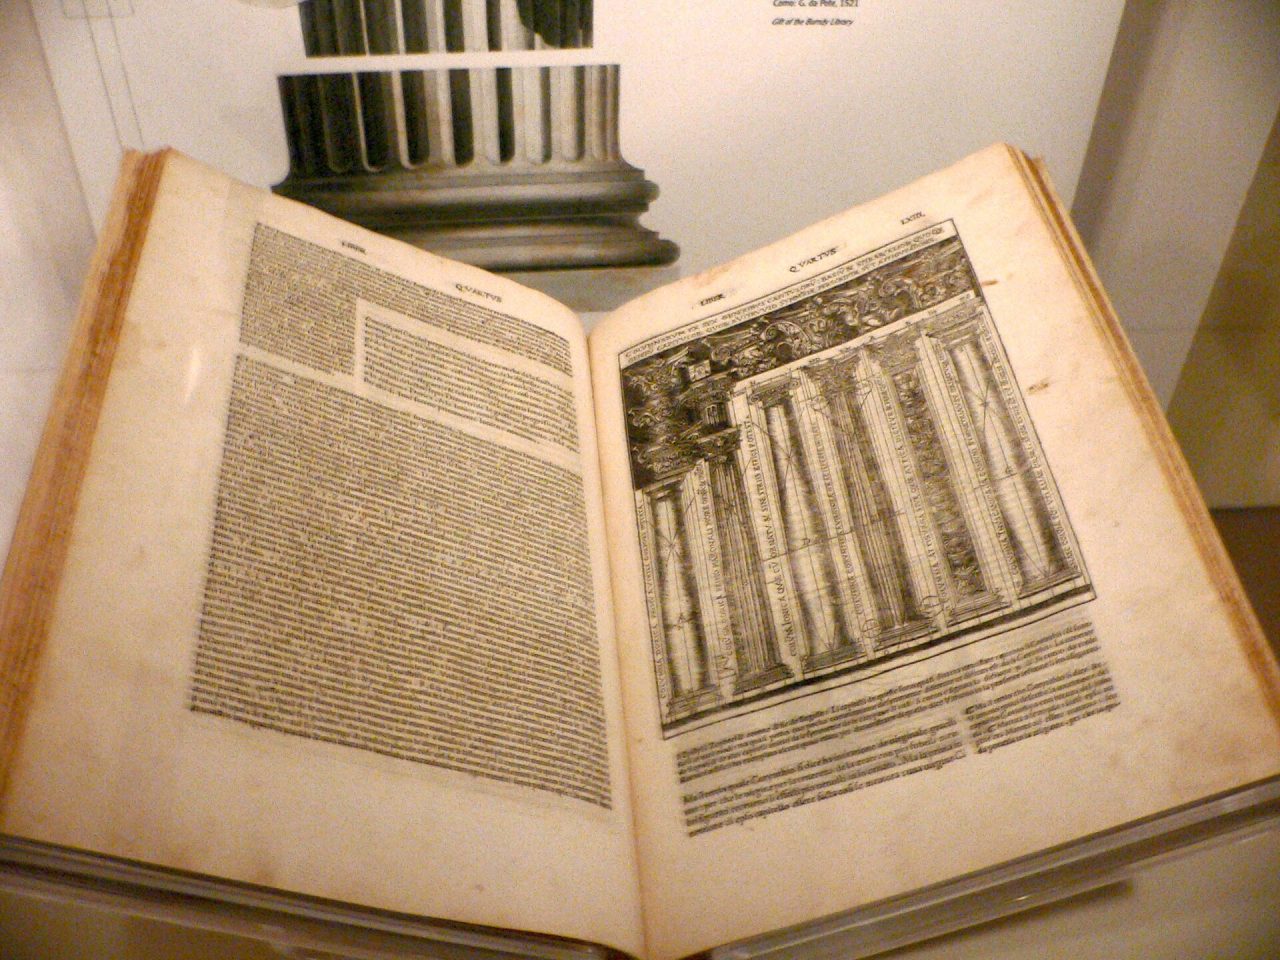 1521 Cesare Caesarion traduccion italiana de Los diez libros de arquitectura de Marco Vitruvio Pollio. Conservado en el Museo Smithsonian de Historia Americana e1708523375704